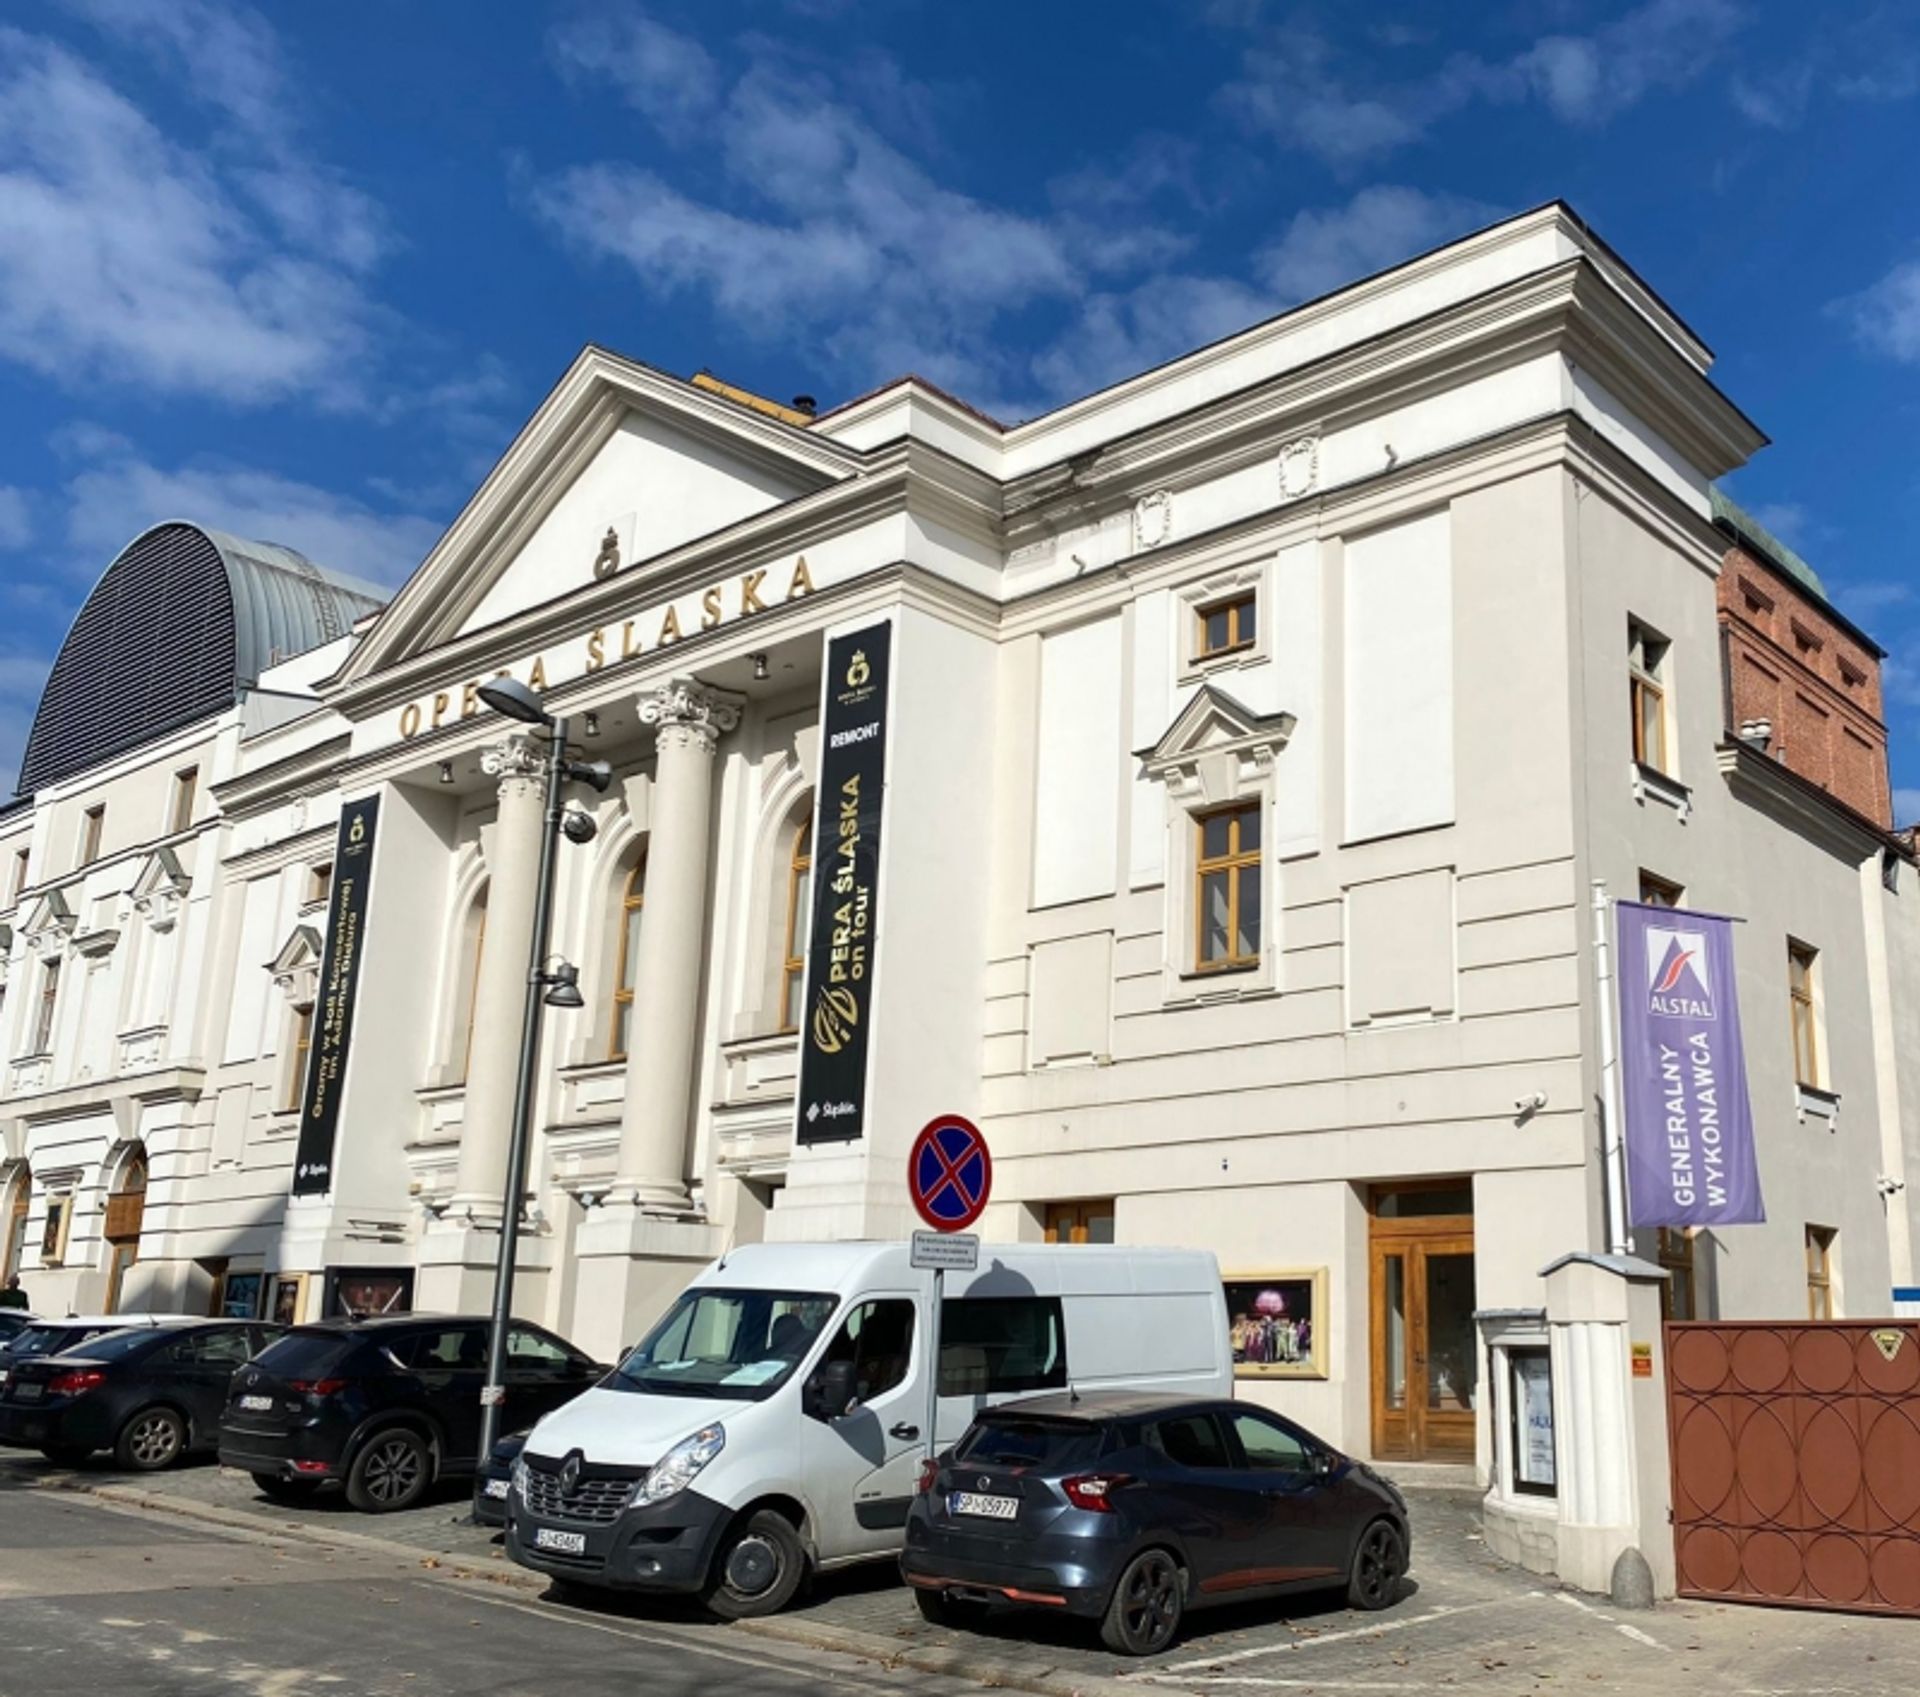 Postęp prac rewitalizacyjnych Opery Śląskiej w Bytomiu